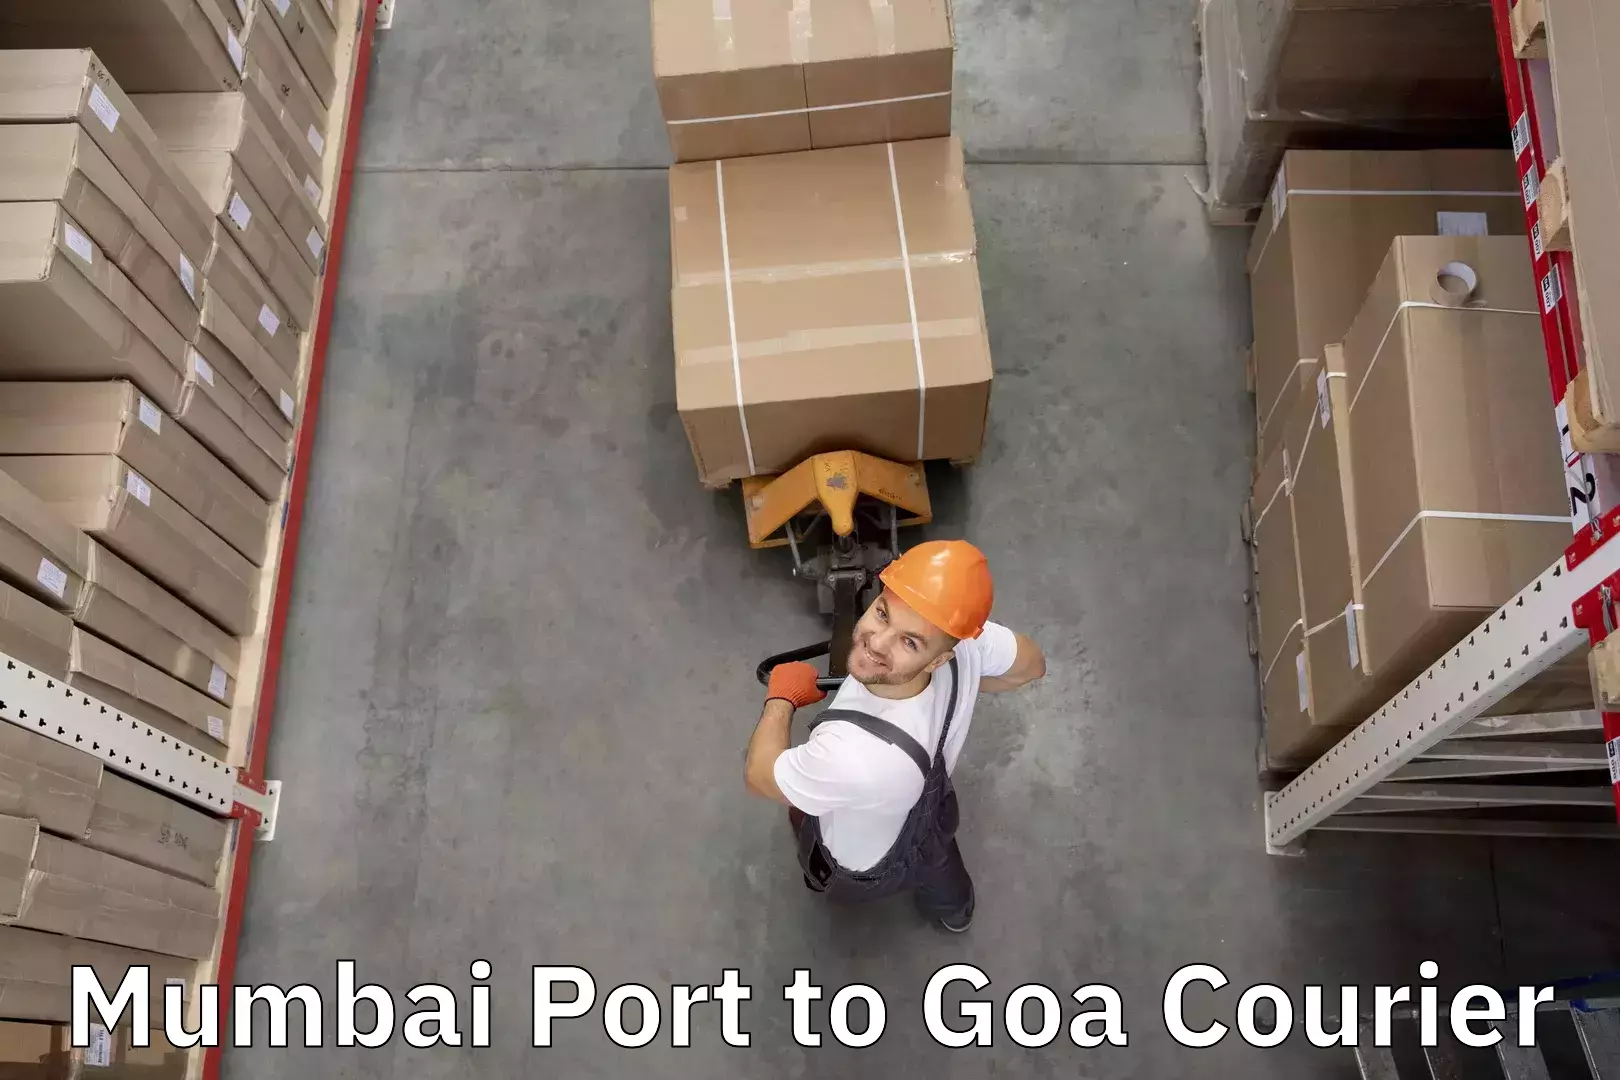 Budget-friendly baggage courier Mumbai Port to Vasco da Gama